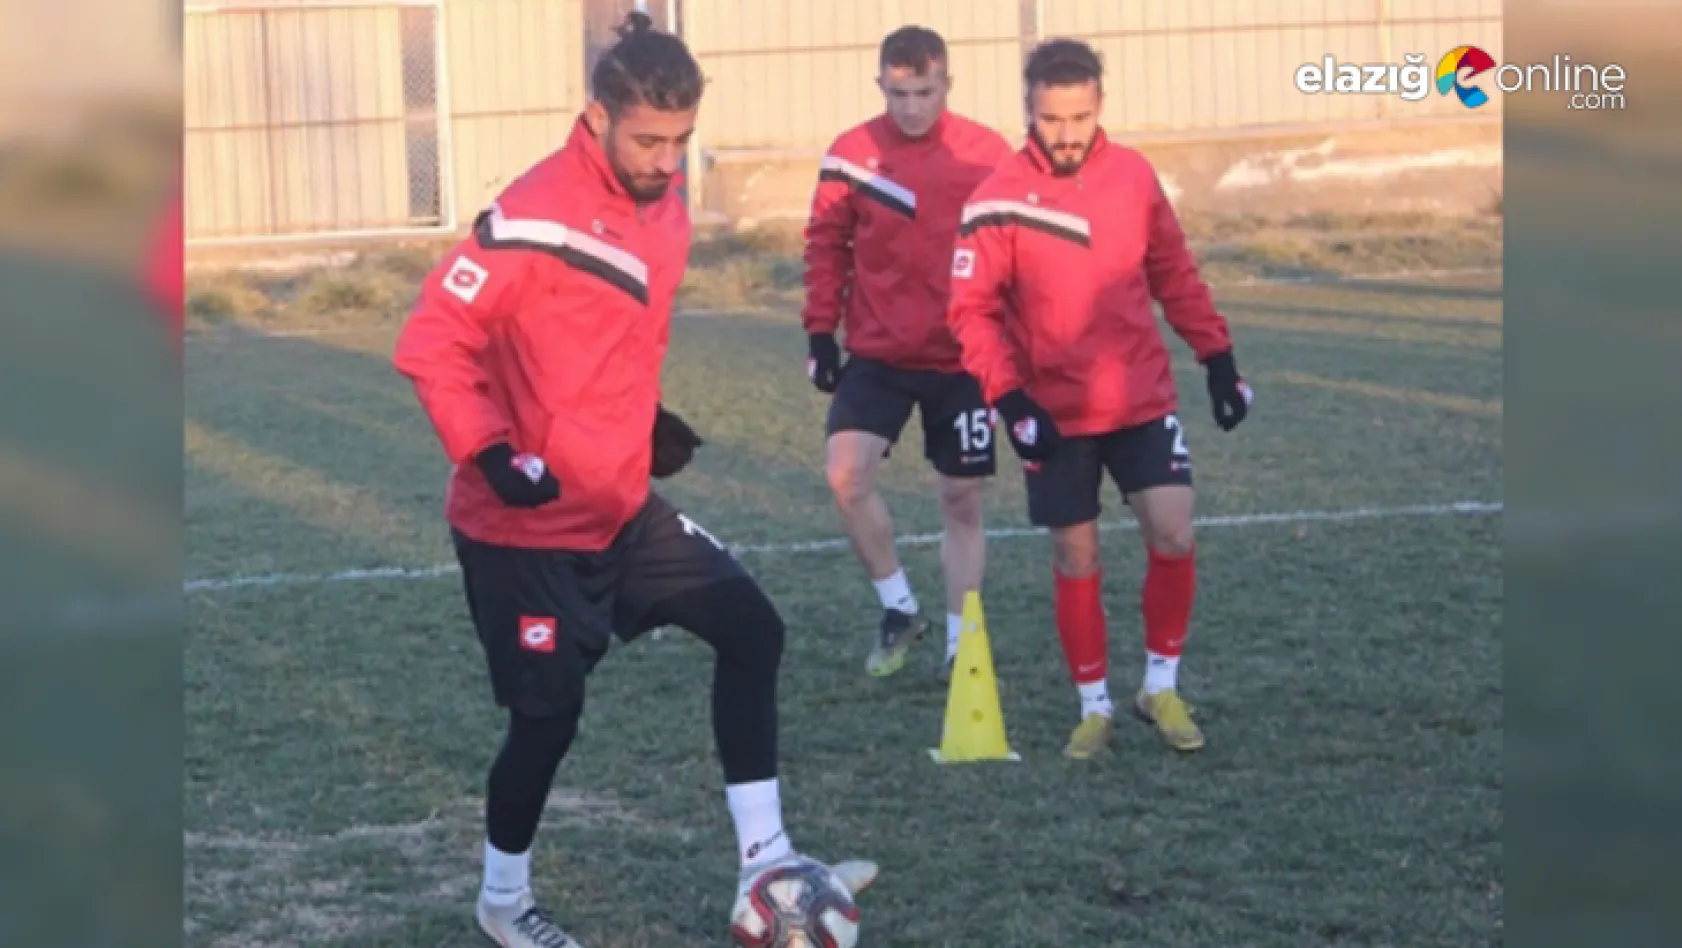 Elazığspor'da transfer teklifi alan genç futbolcuların kafası karışık